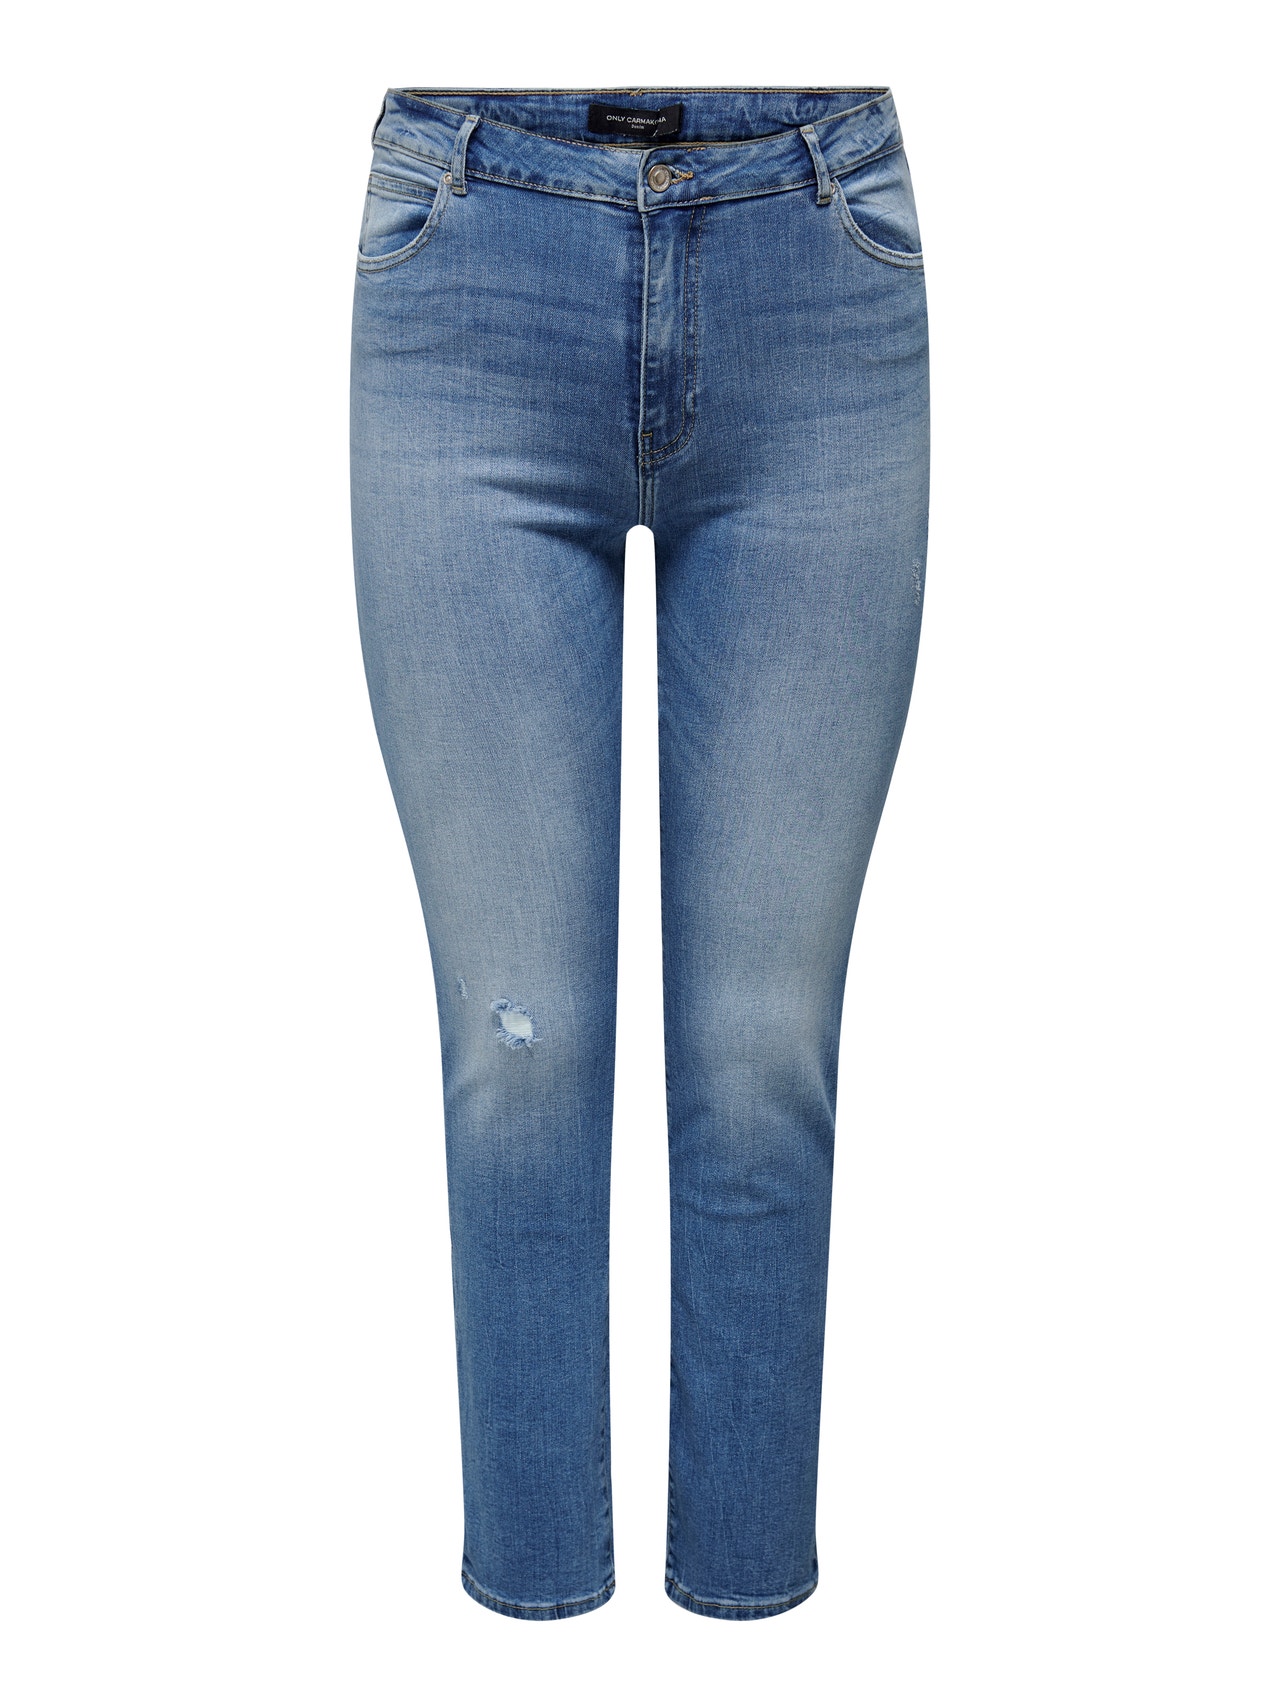 ONLY Straight Fit High waist Jeans -Dark Blue Denim - 15283492